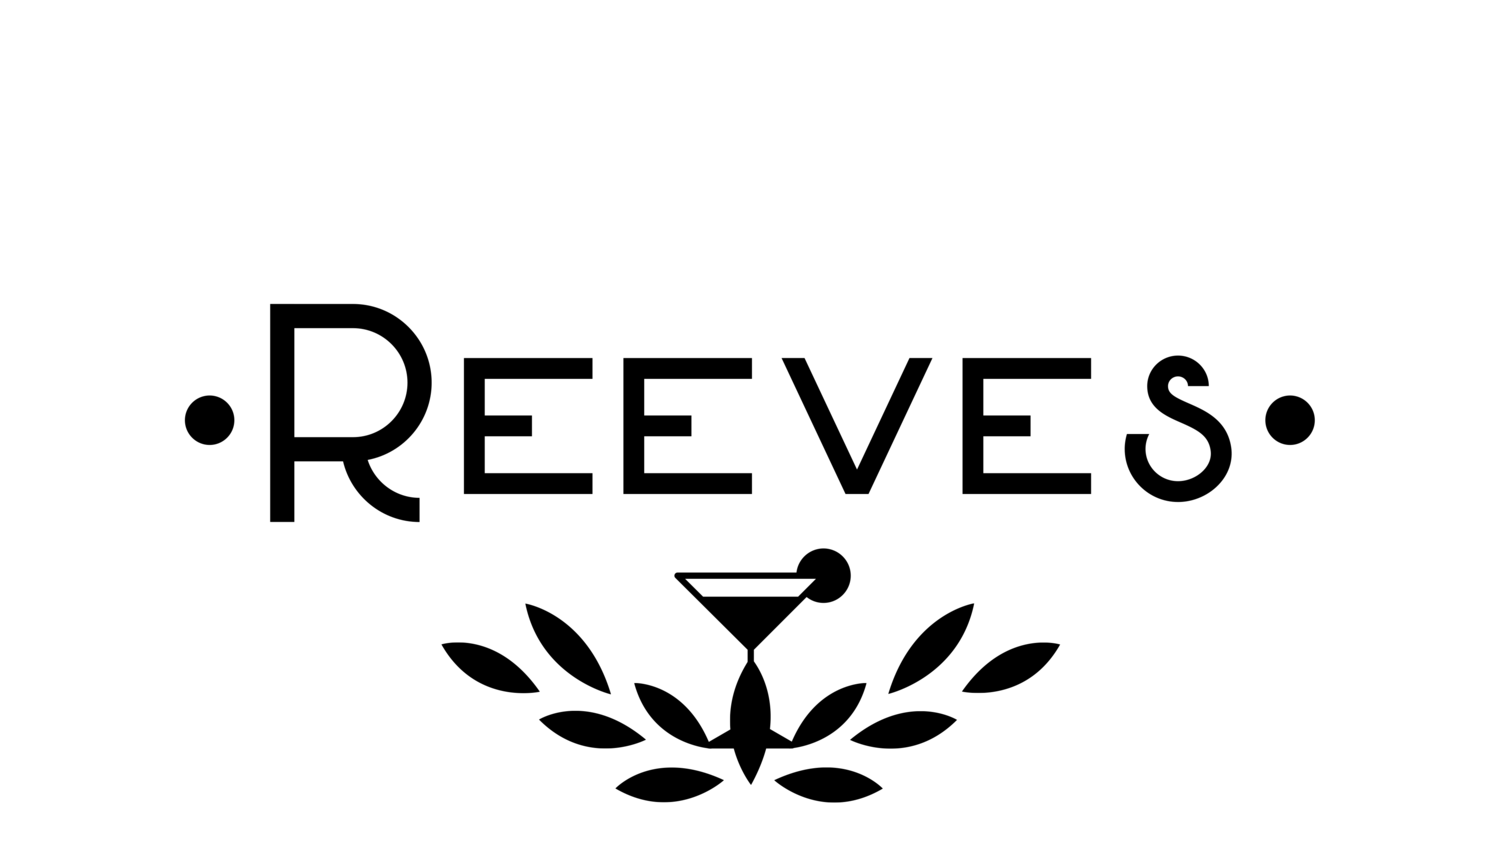 Reeves 